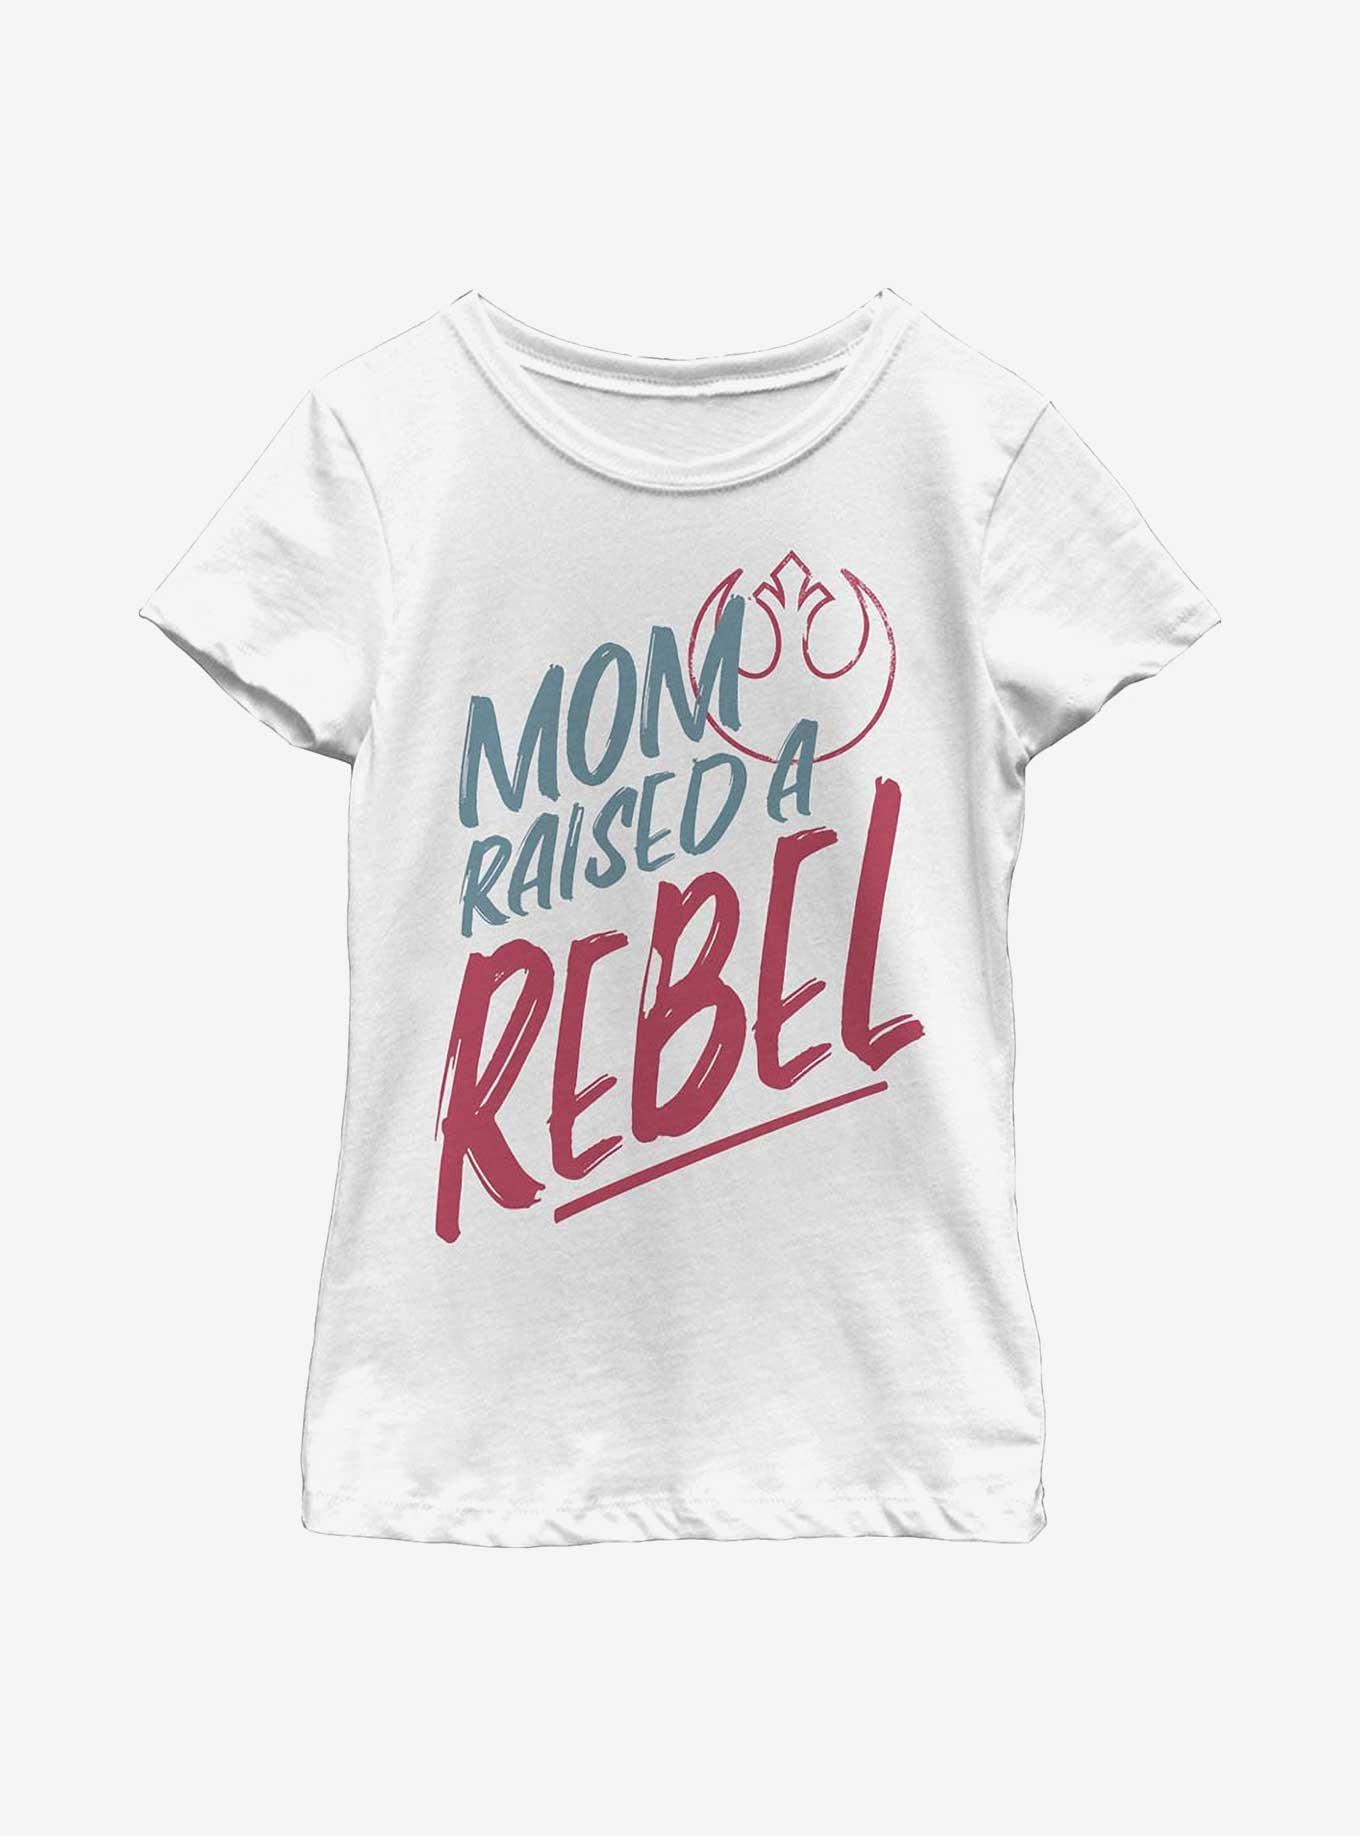 Star Wars Rebel Kid Youth Girls T-Shirt, WHITE, hi-res